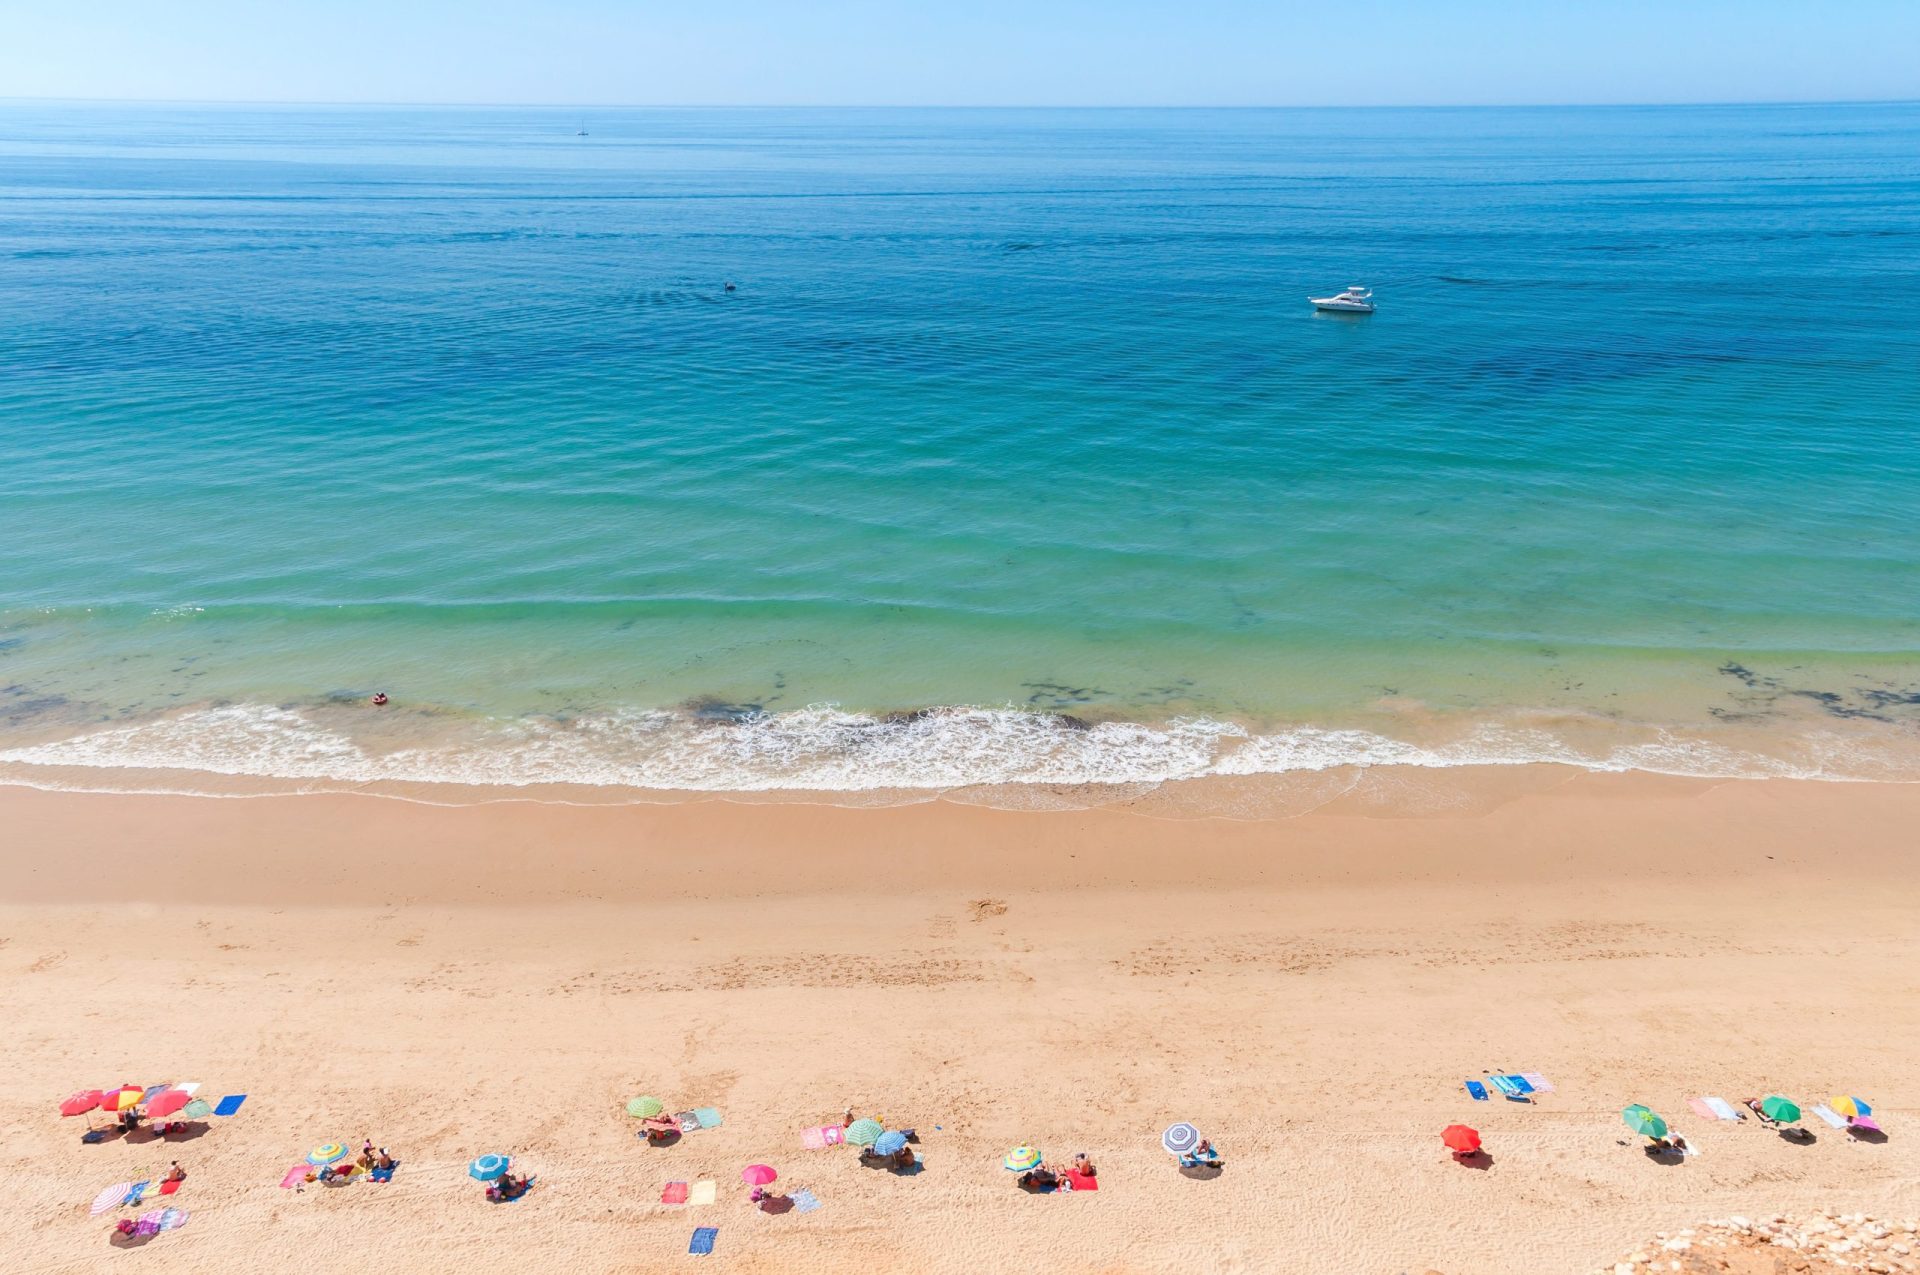 203 praias portuguesas ‘acessíveis’ a deficientes em 2015